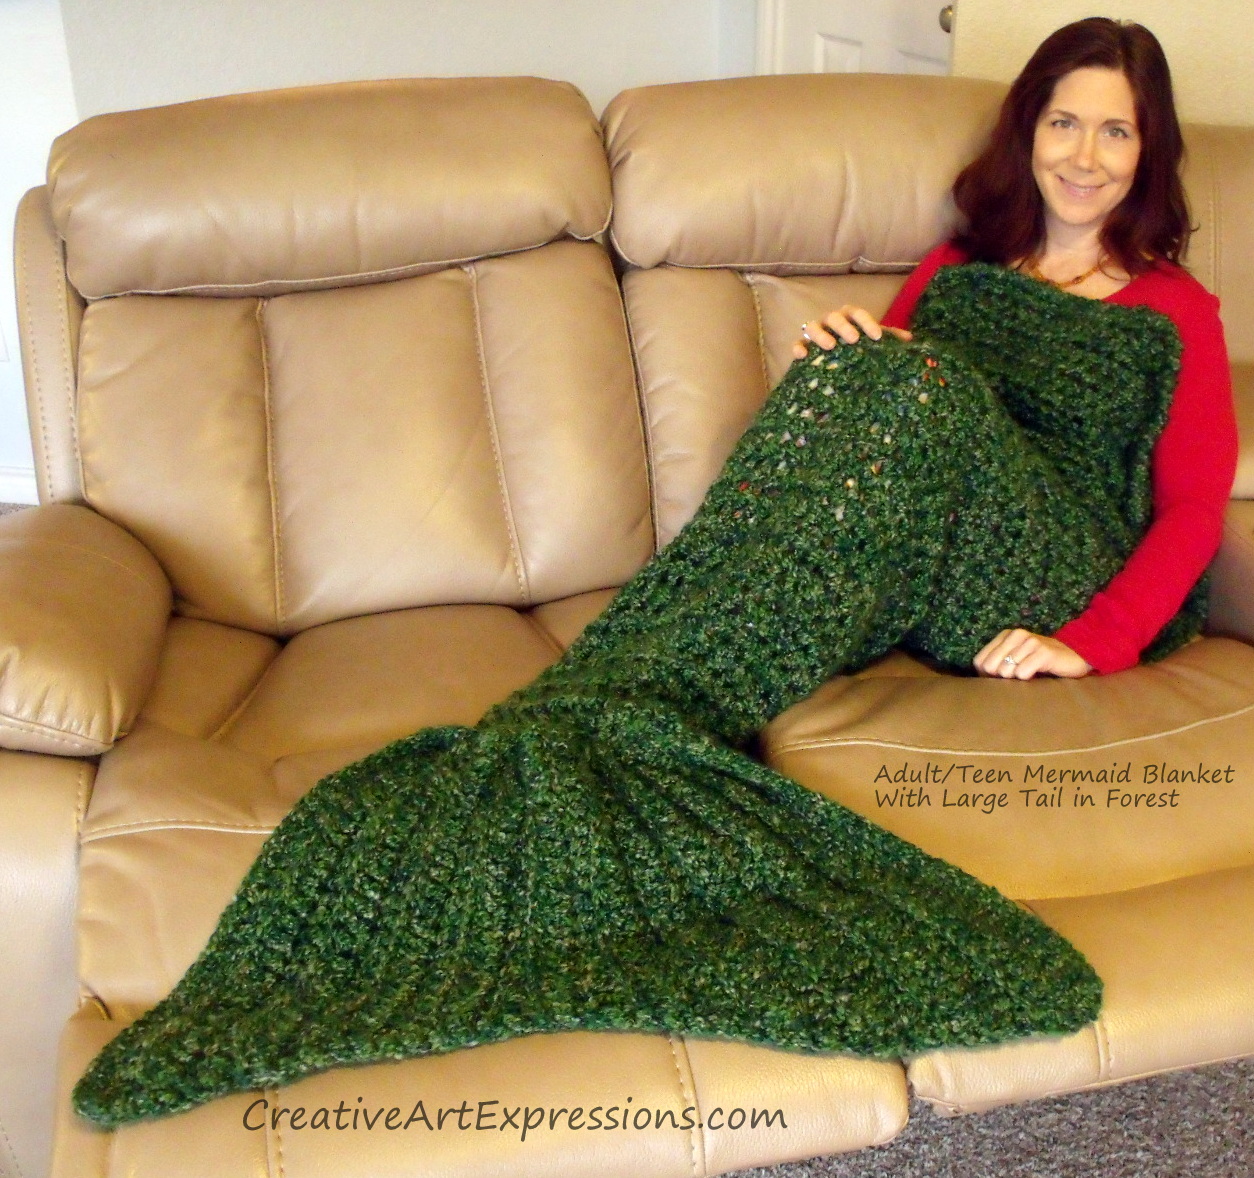 AdultTeen Forest Mermaid Blanket Creative Art Expre